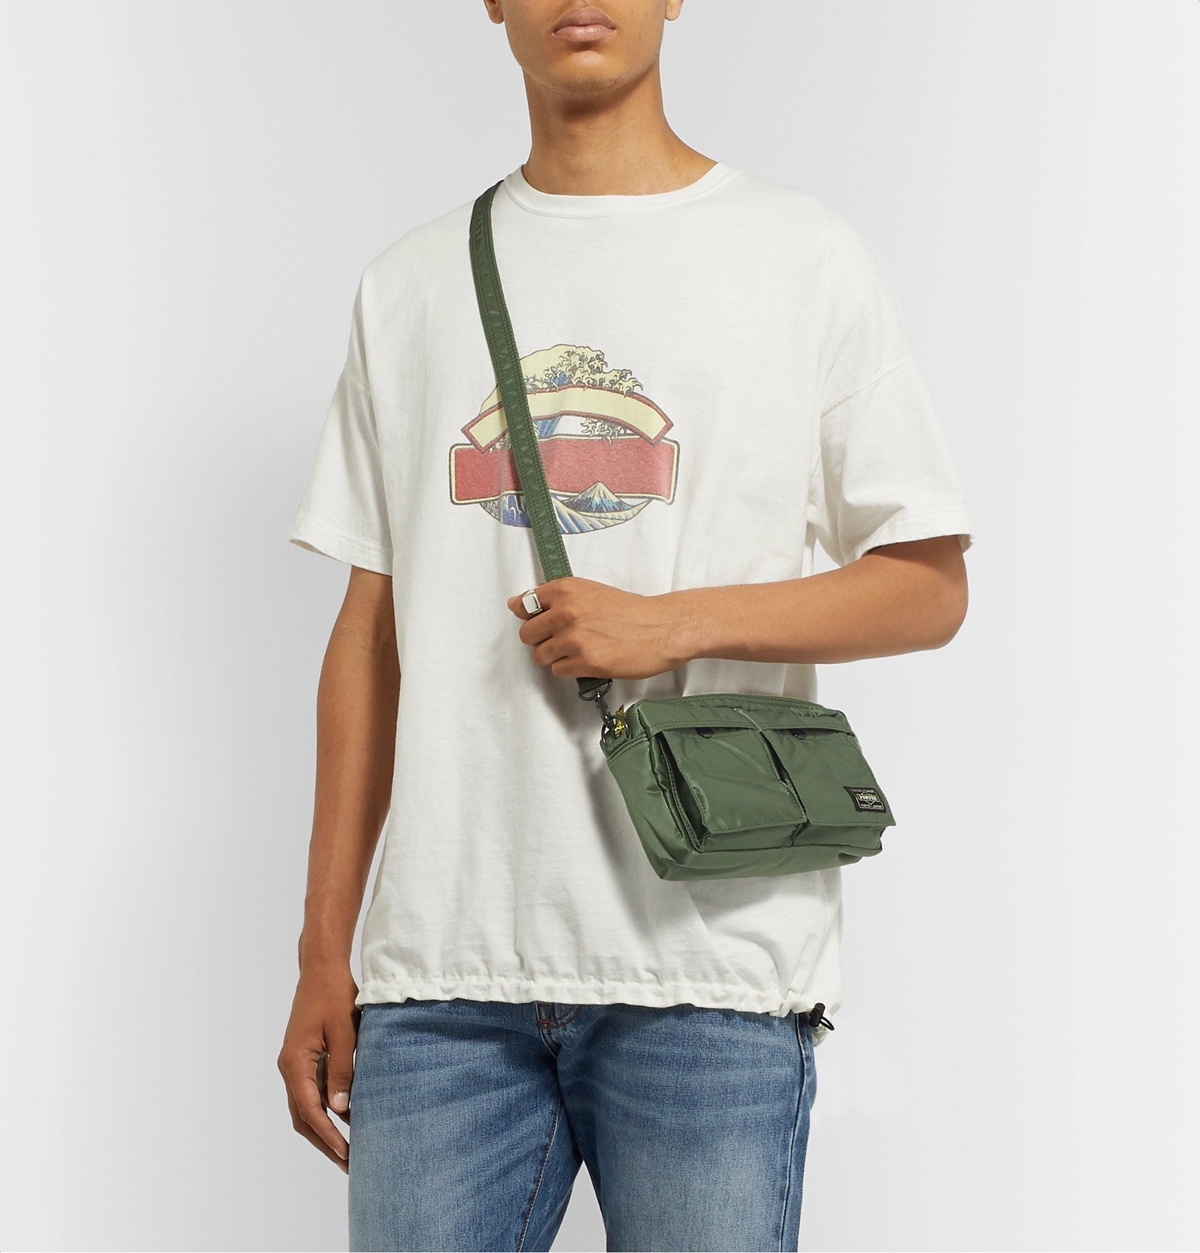 Porter-Yoshida & Co. Tanker Shoulder Bag